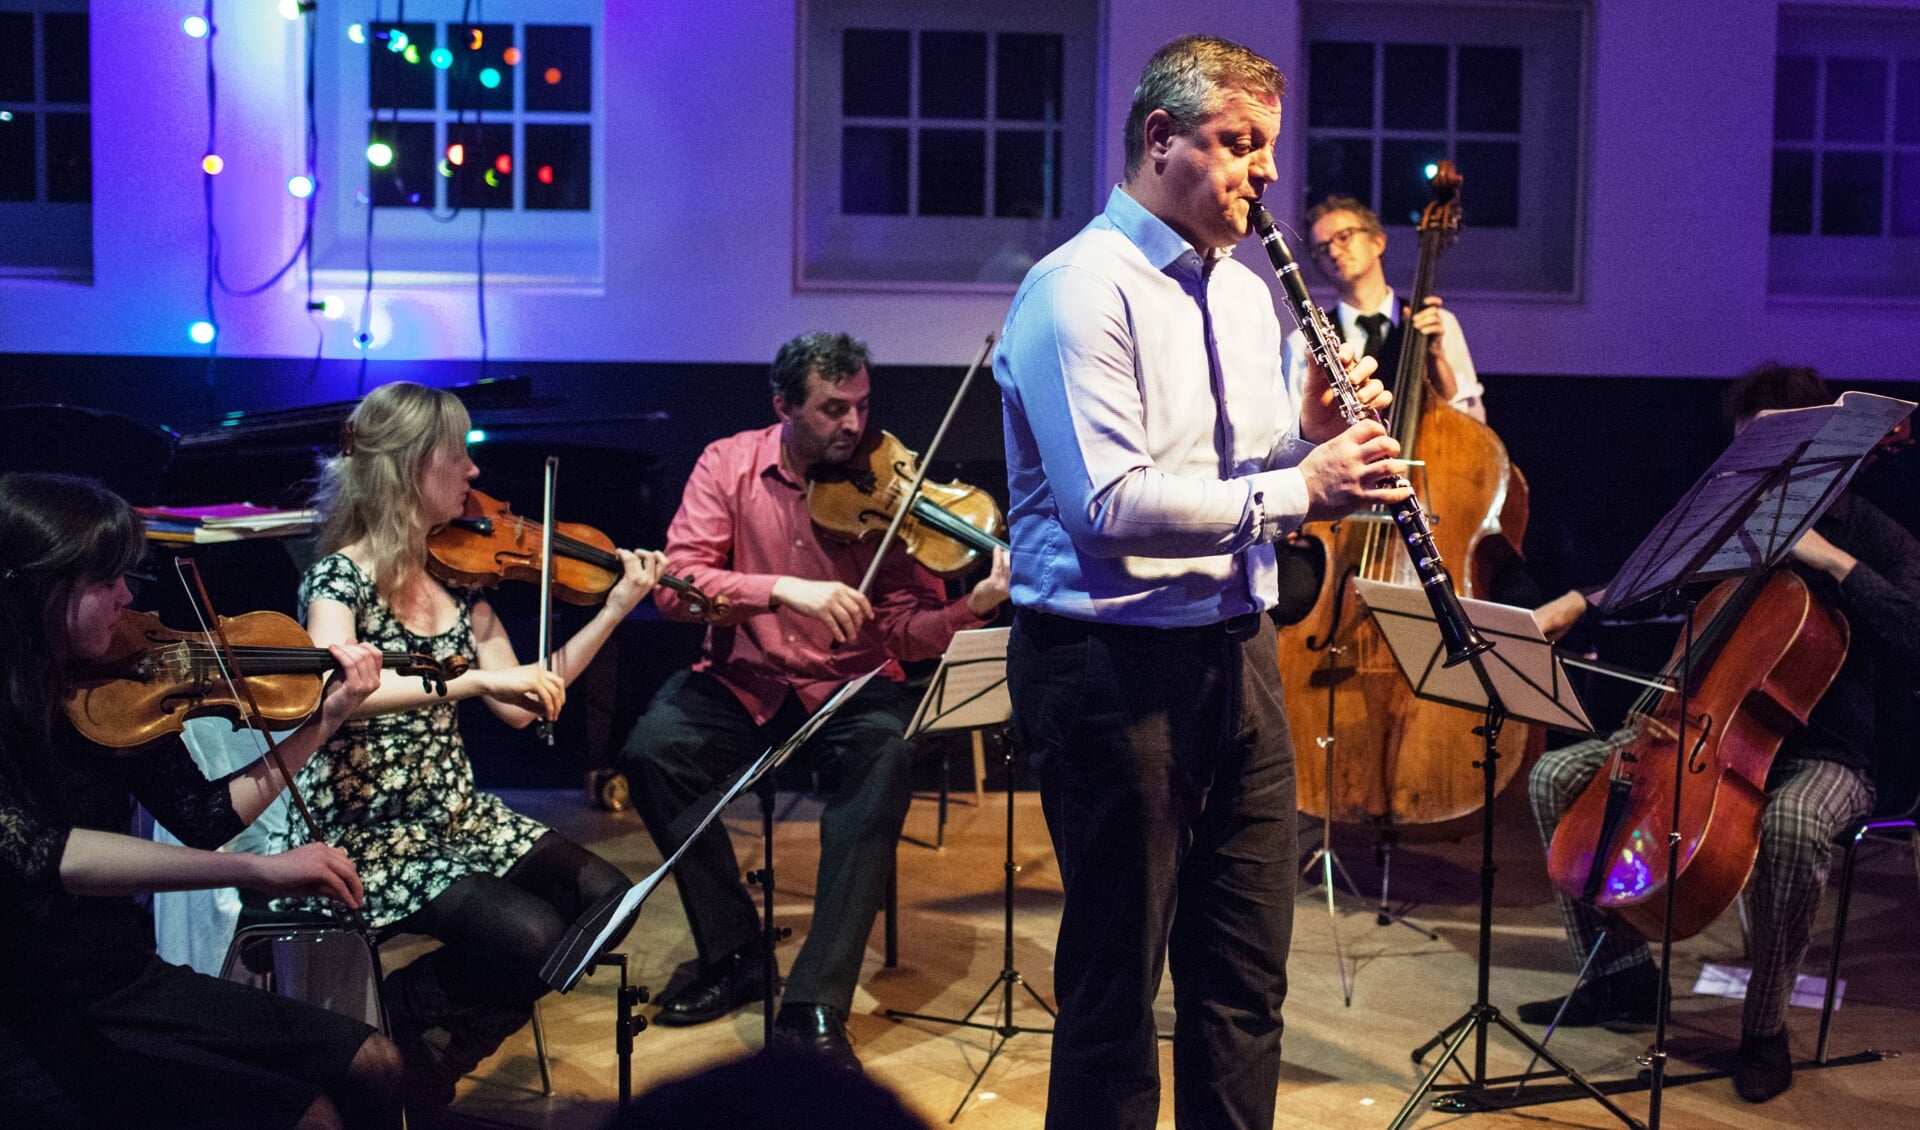 Leden van het Radio Filharmonisch Orkest en getalenteerde amateurs uit Hilversum hebben zondag een muzikale sessie in het MCO. 